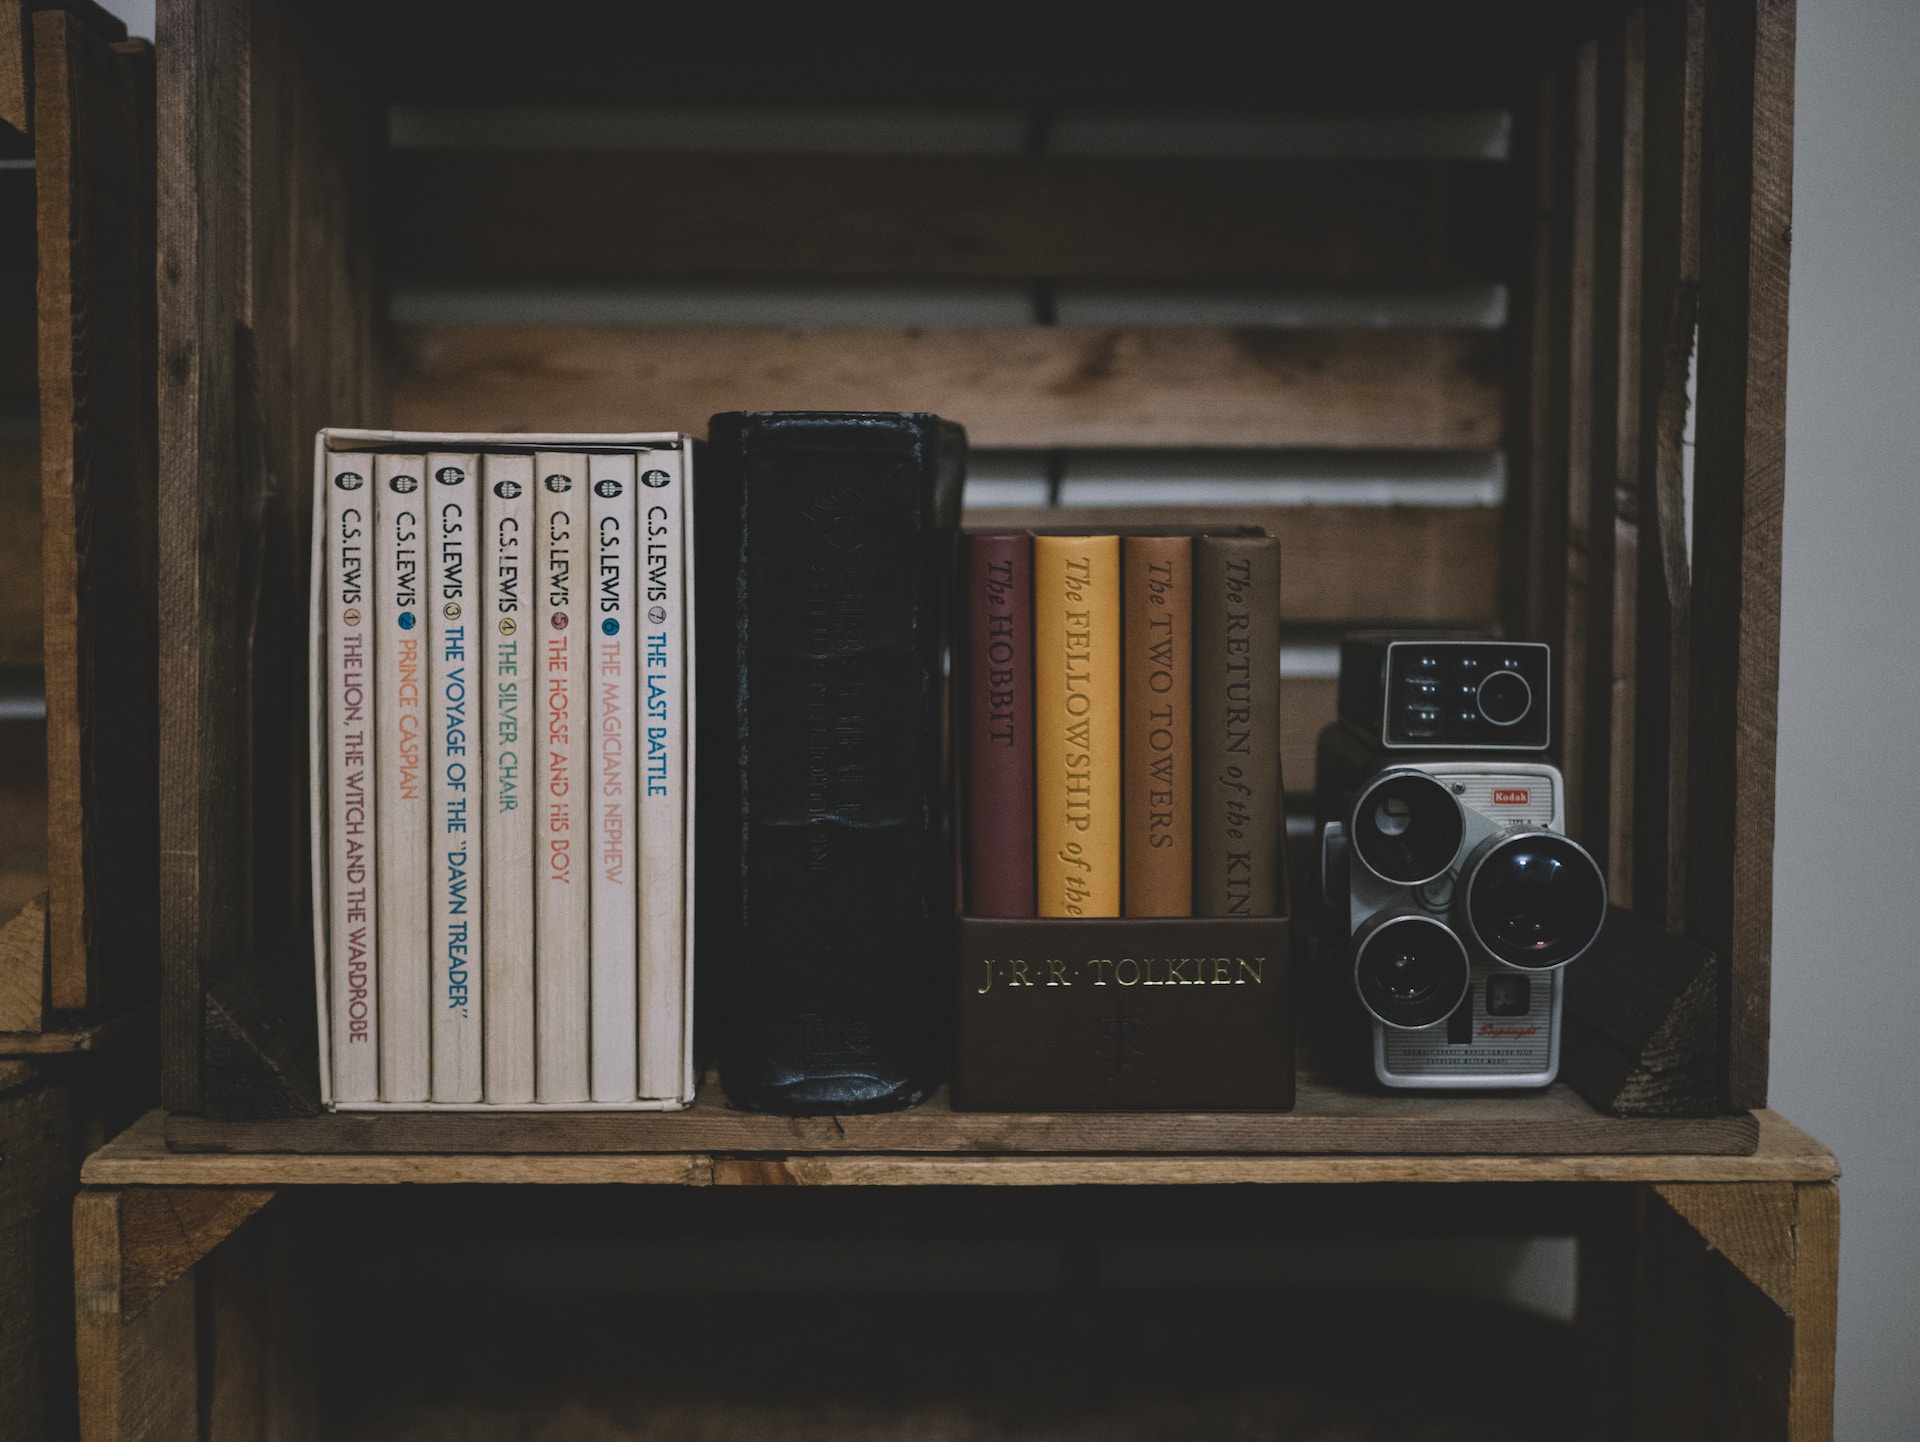 Books and a camera on a shelf